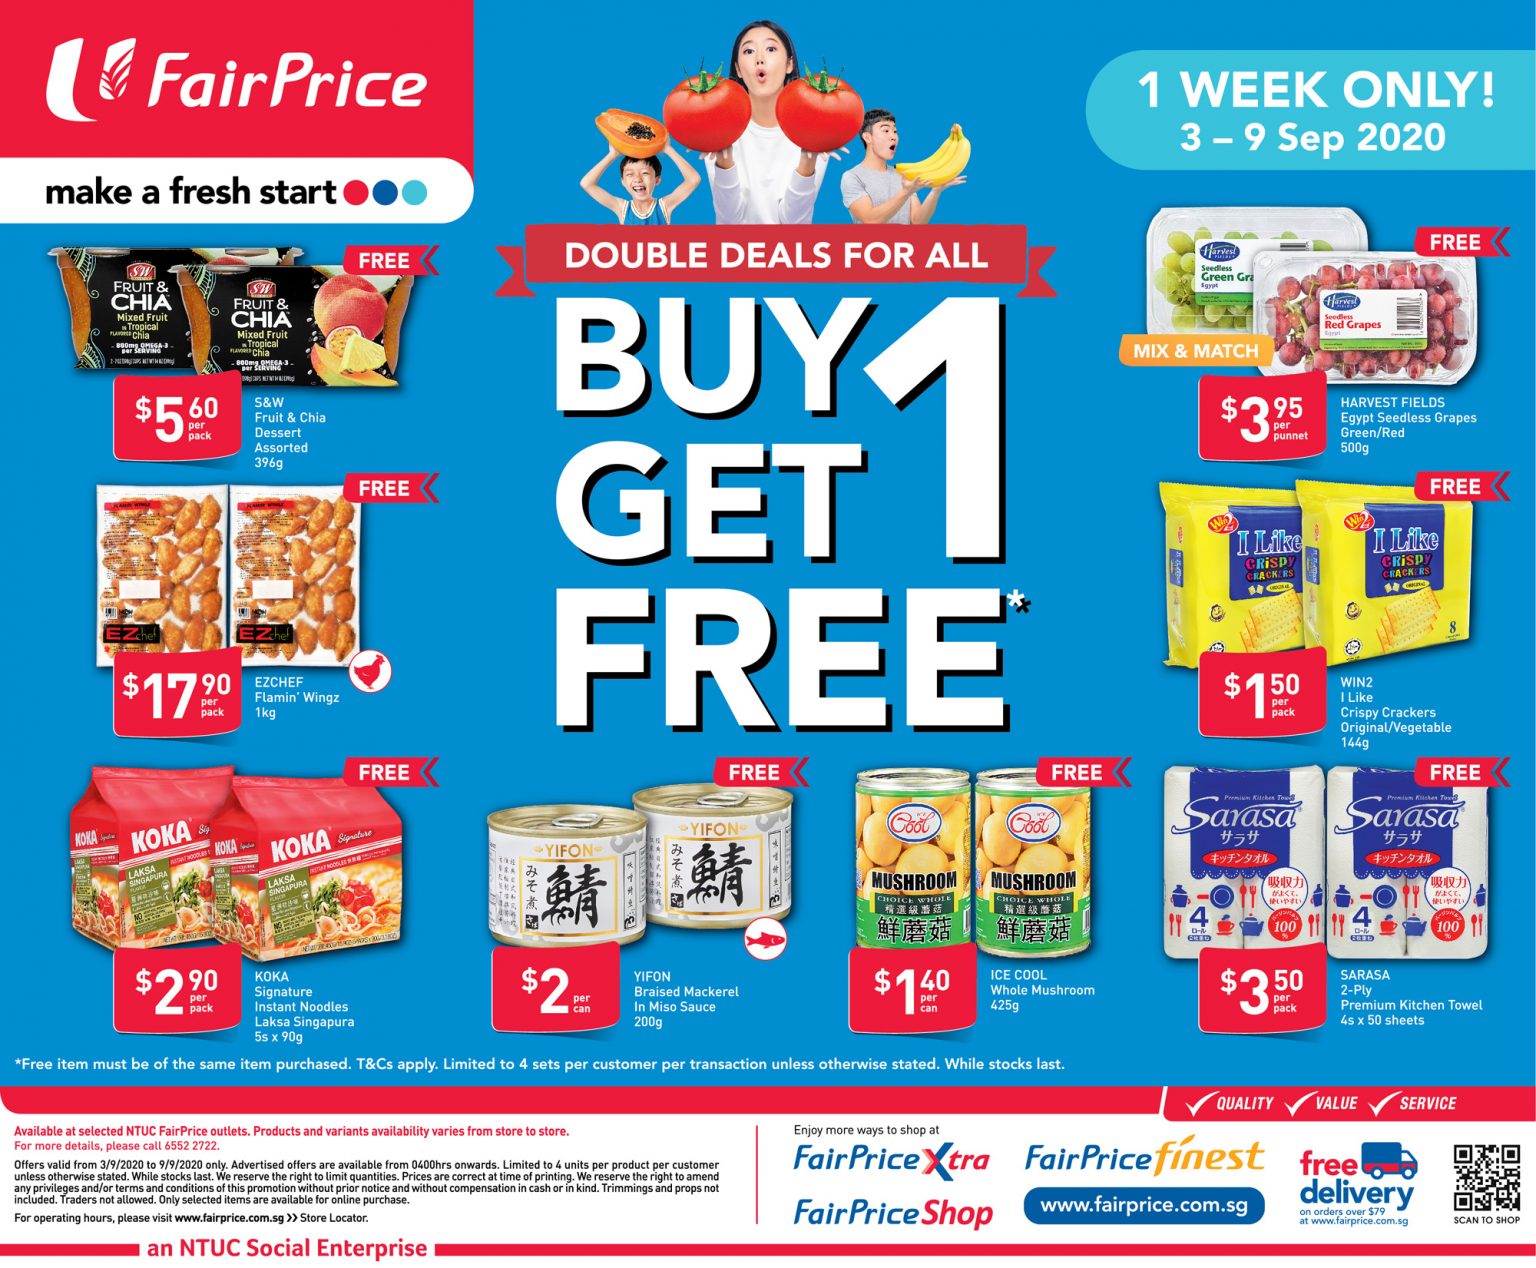 FairPrice buy 1 get 1 free deals till 9 September 2020